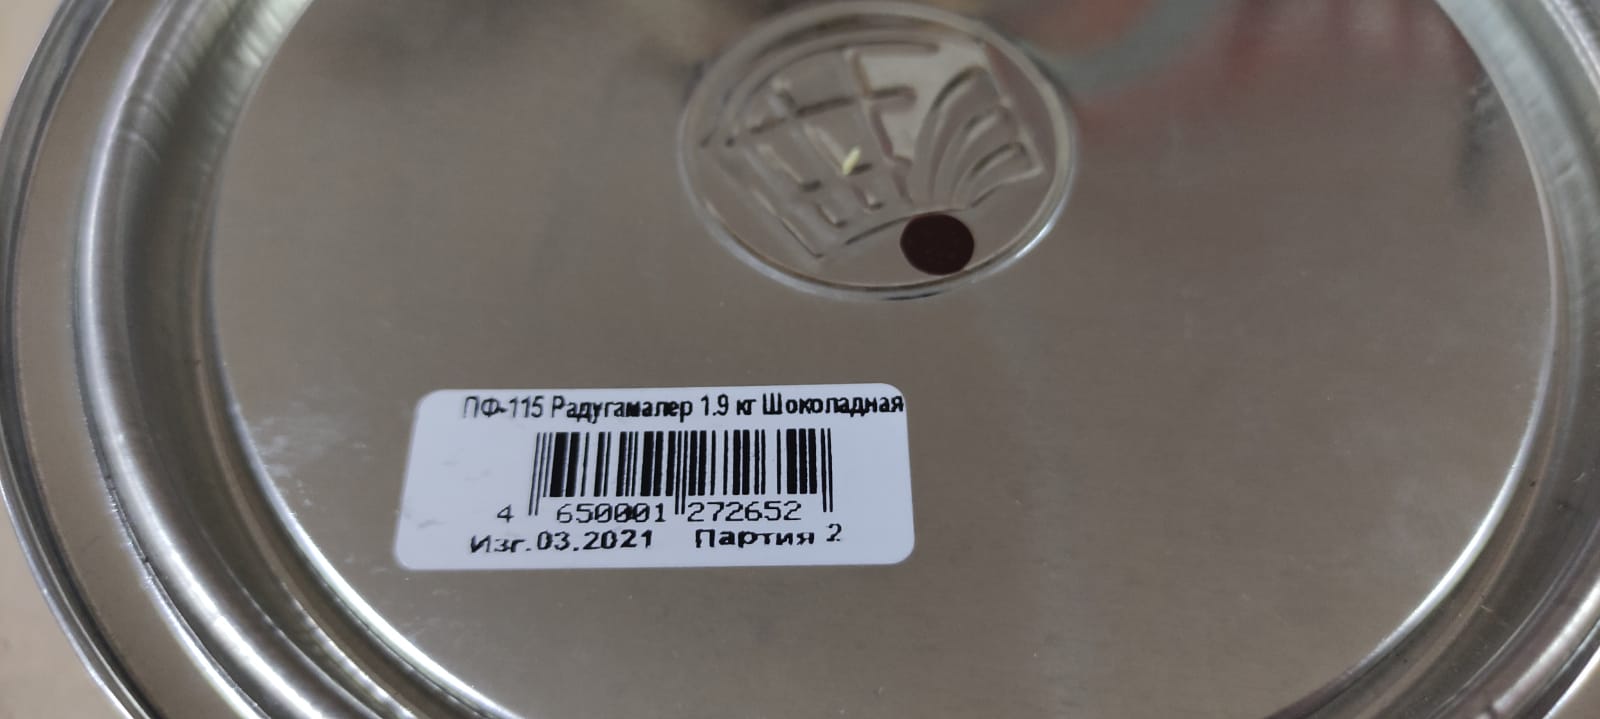 Эмаль ПФ 115 универсальная РадугаМалер 1,9 кг (шоколадная)